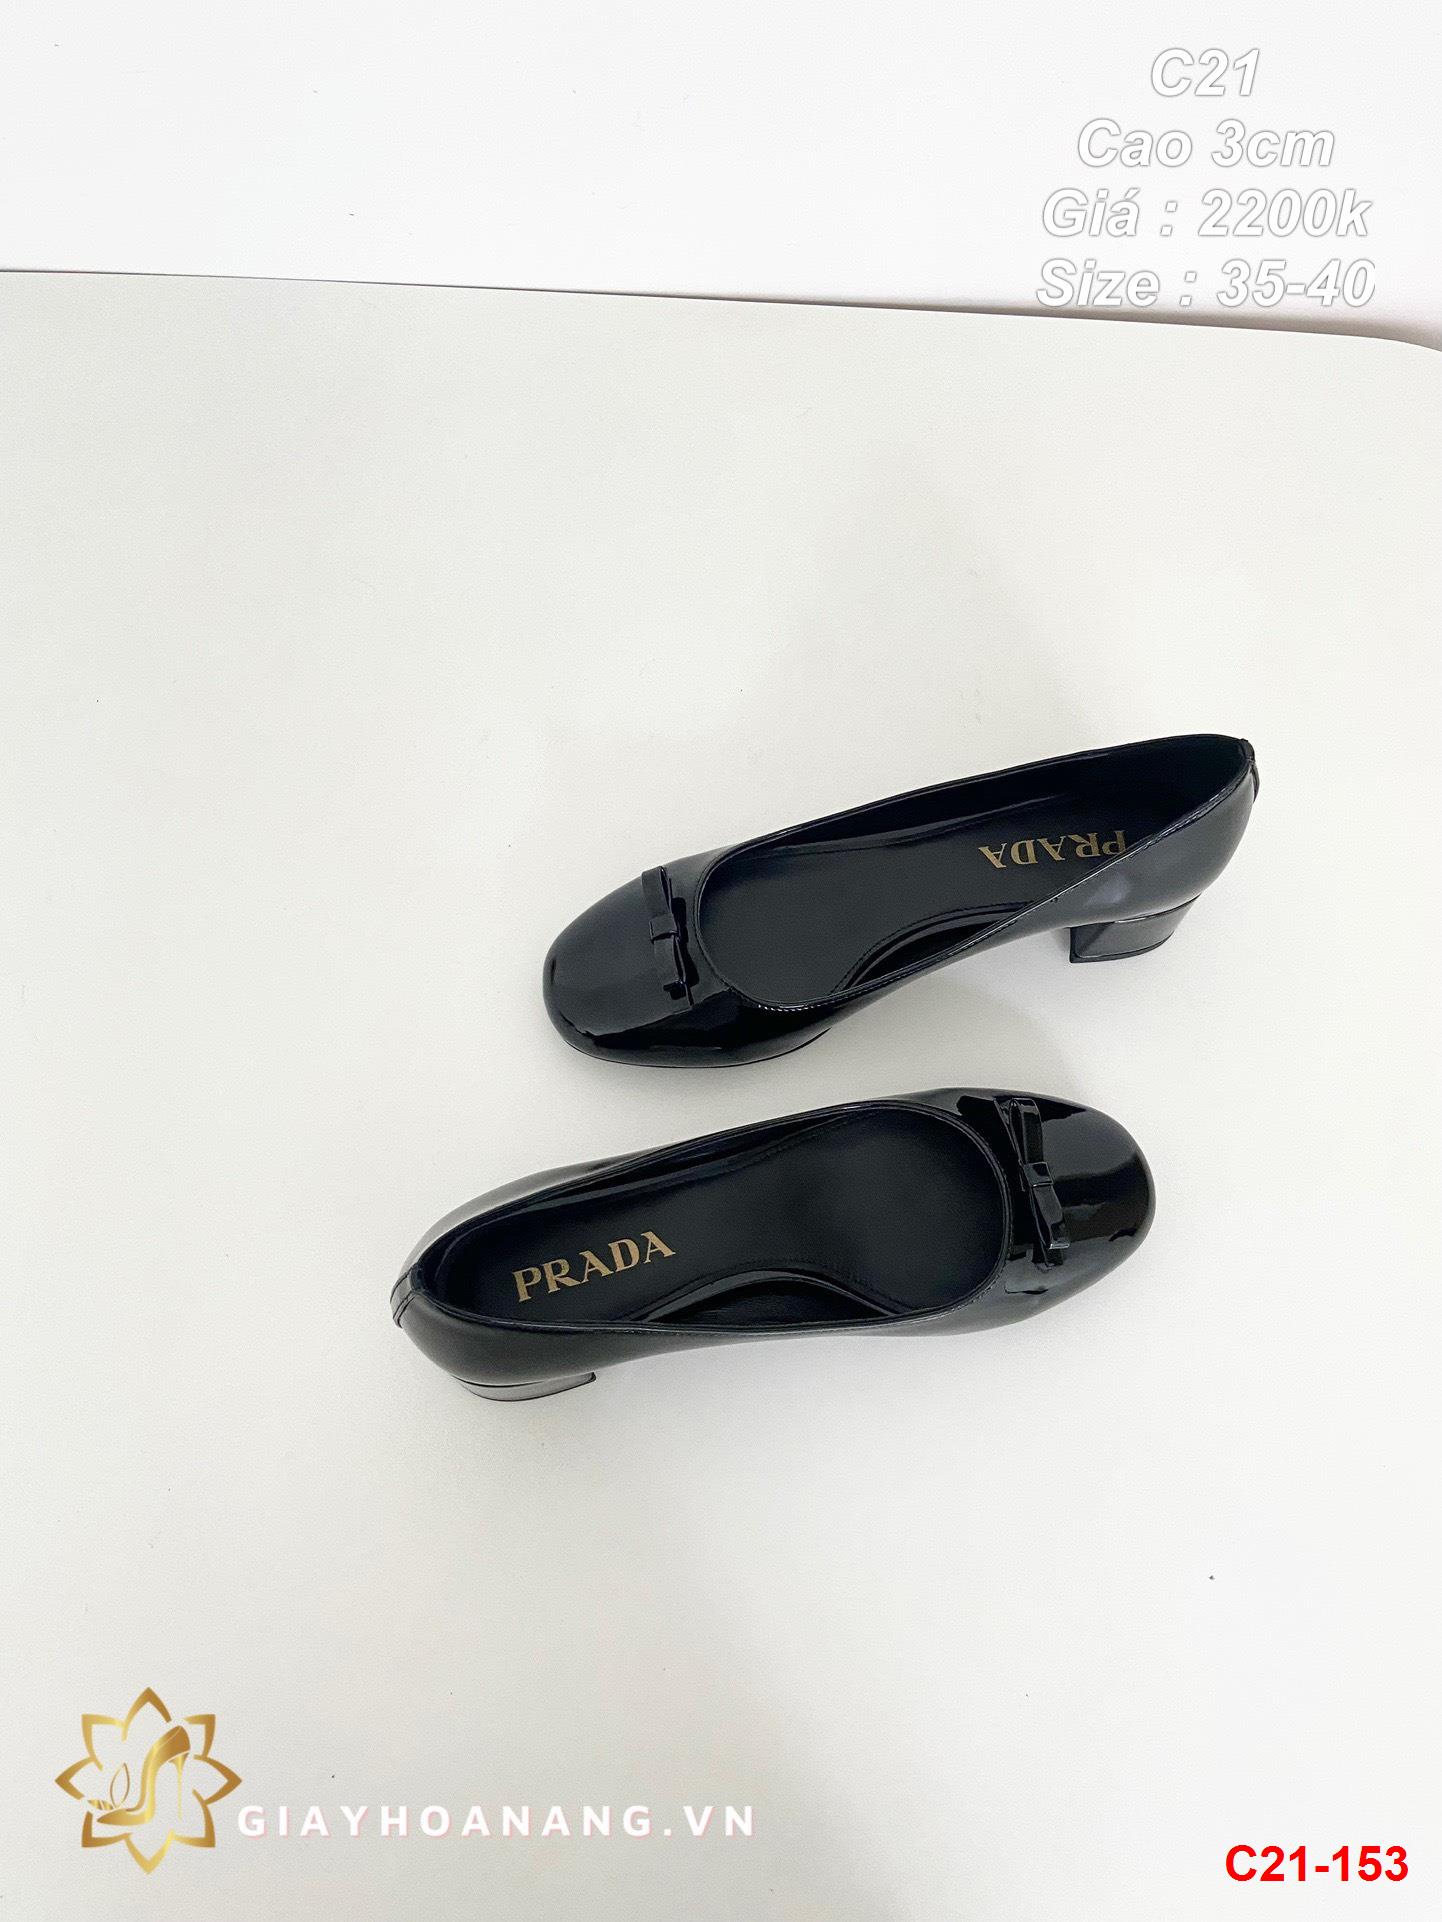 C21-153 Prada giày cao 3cm siêu cấp